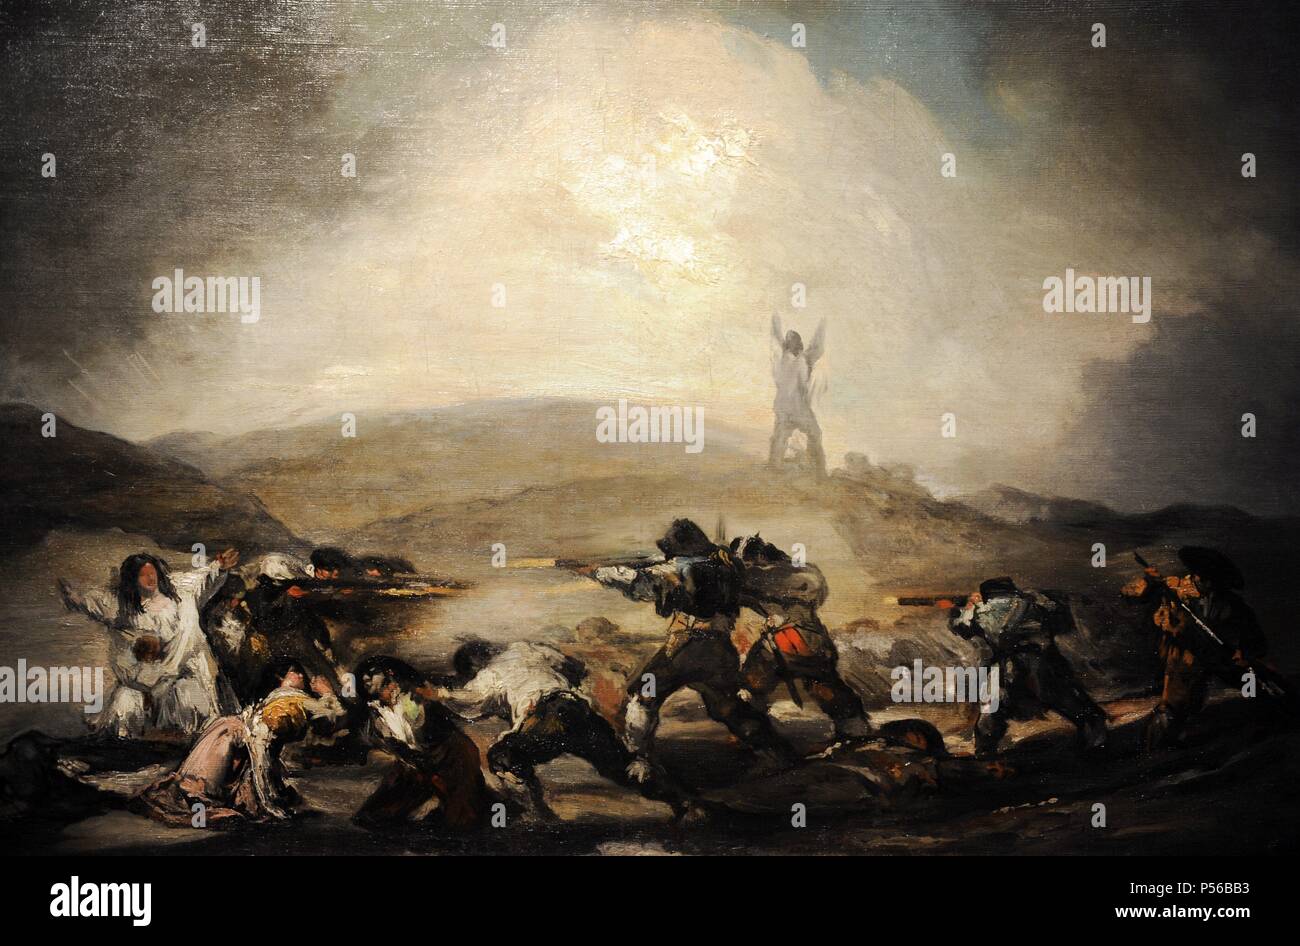 Francisco de Goya (1746-1828). Pintor romántico español. Las escenas de la Guerra de Independencia Española, después de 1808. El Museo de Bellas Artes de Budapest. Hungría. Foto de stock